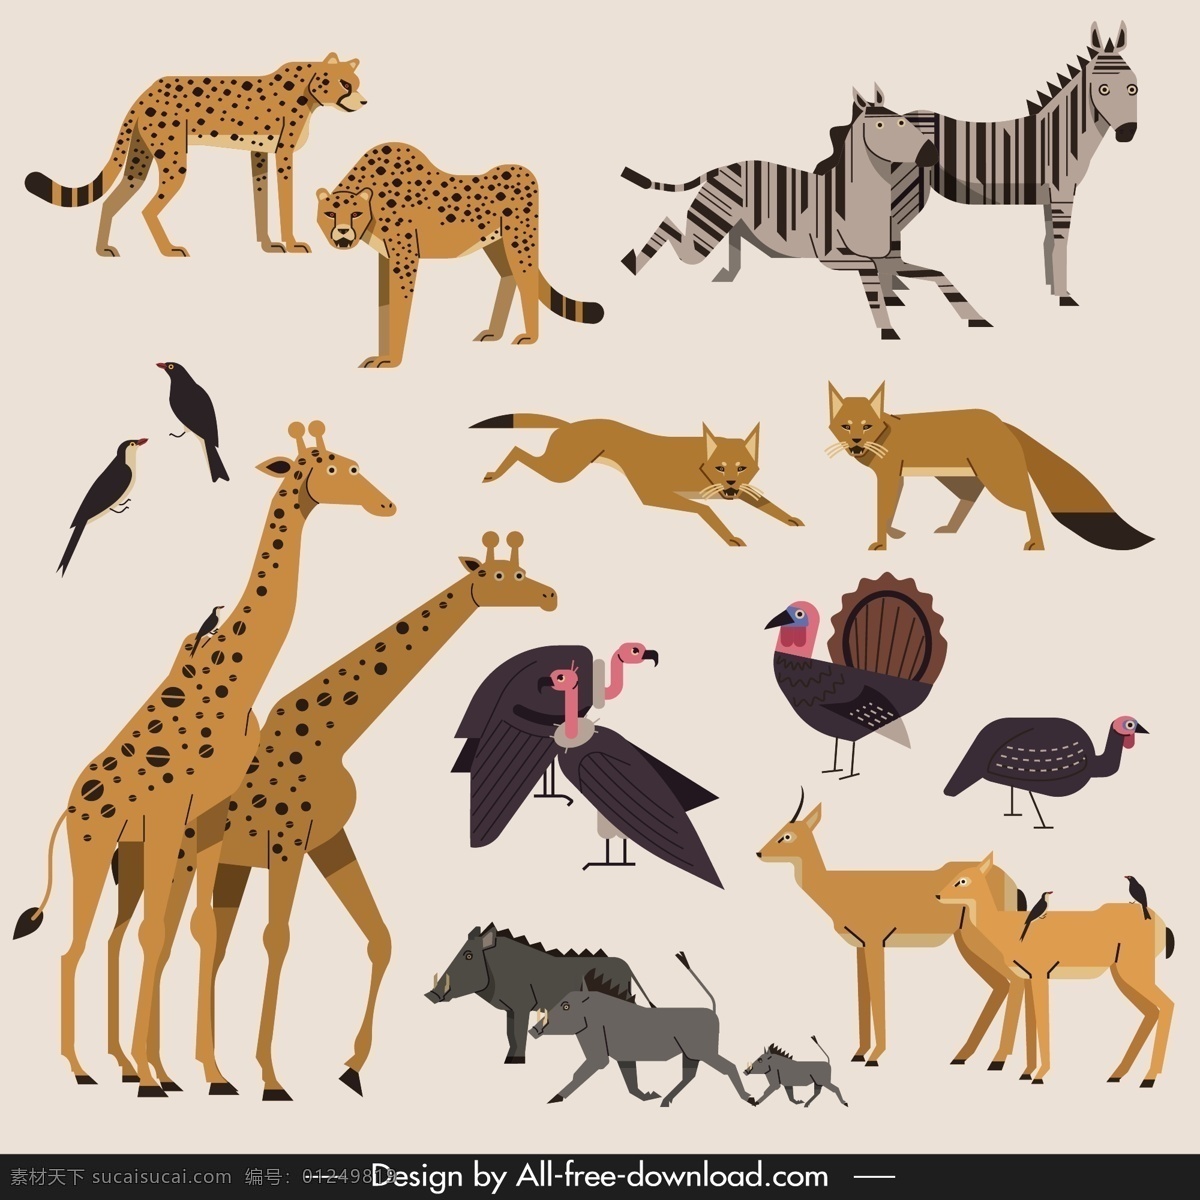 非洲野生动物 卡通 野生动物 非洲动物 动物 卡通动物 长颈鹿 斑马 野猪 狐狸 豹子